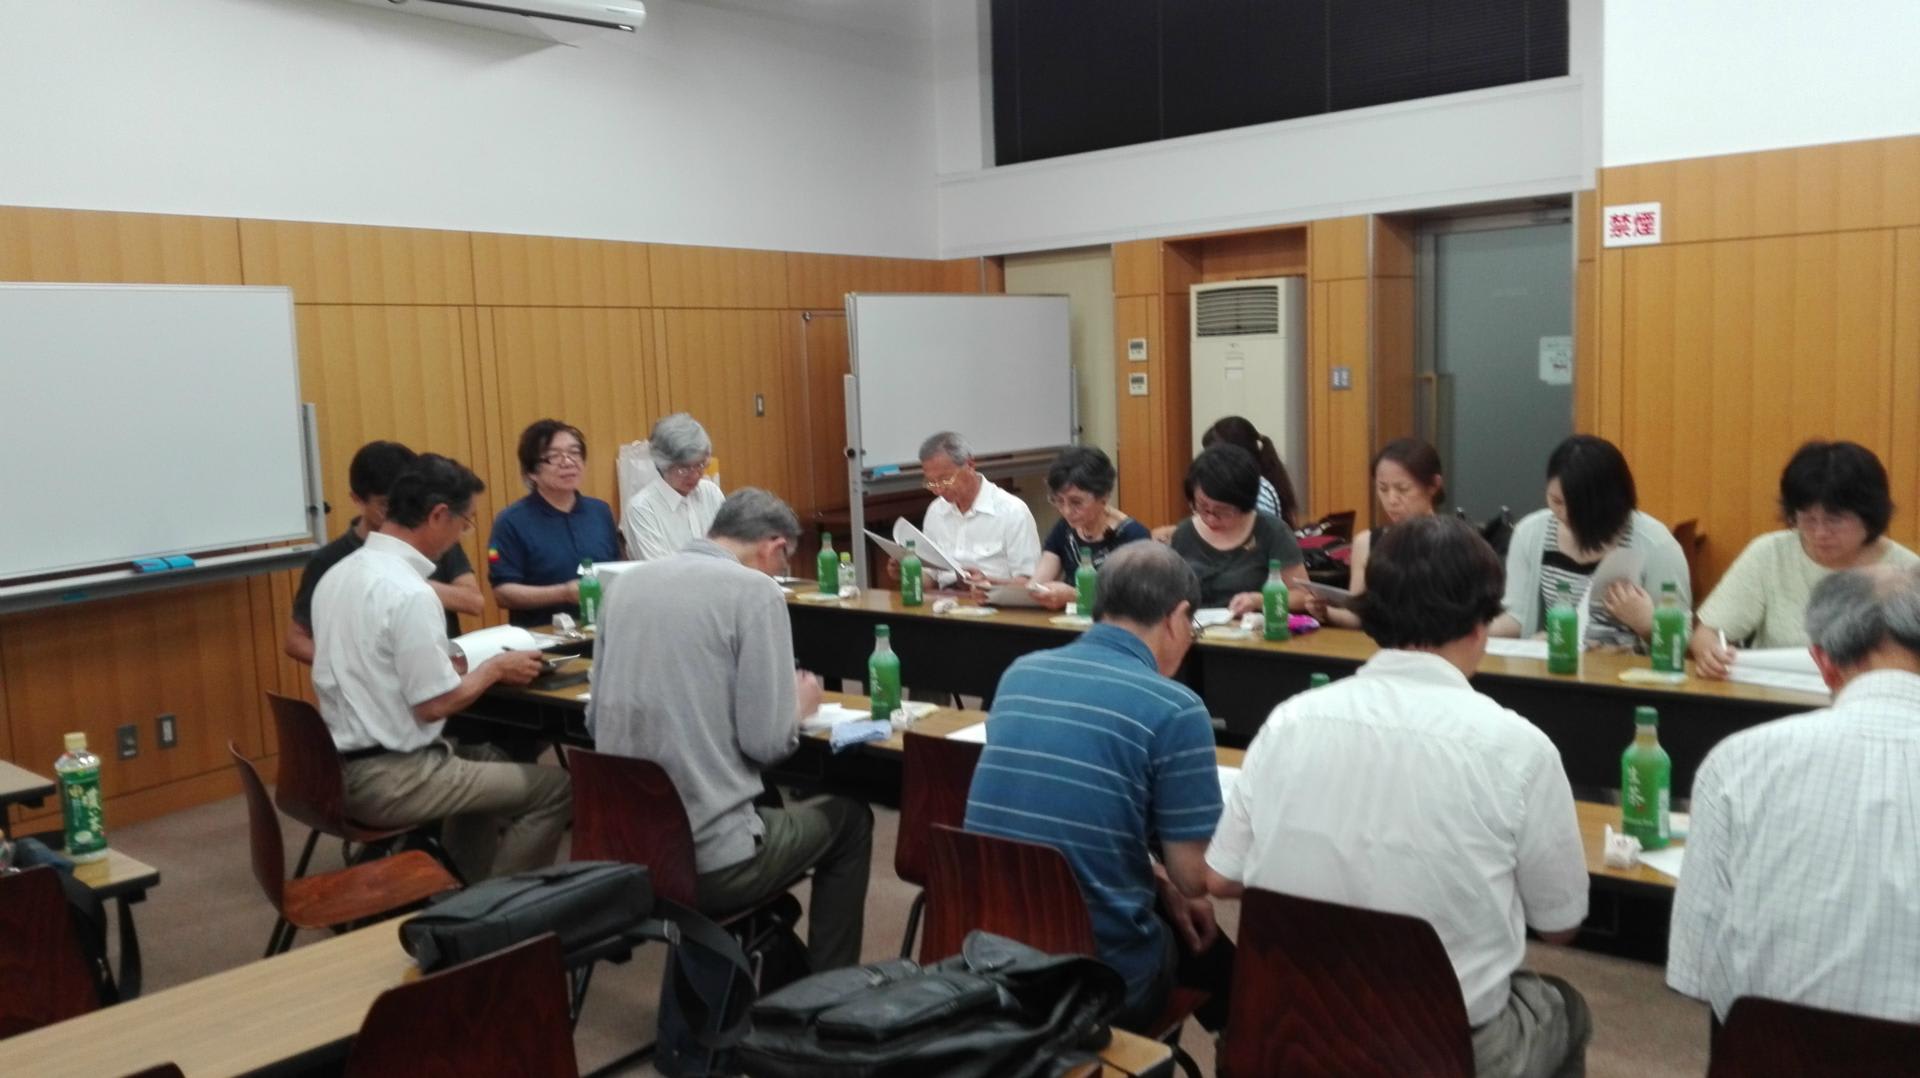 7 2 幹事会に参加しました 日本大学文理学部数学会 第１７期同期会